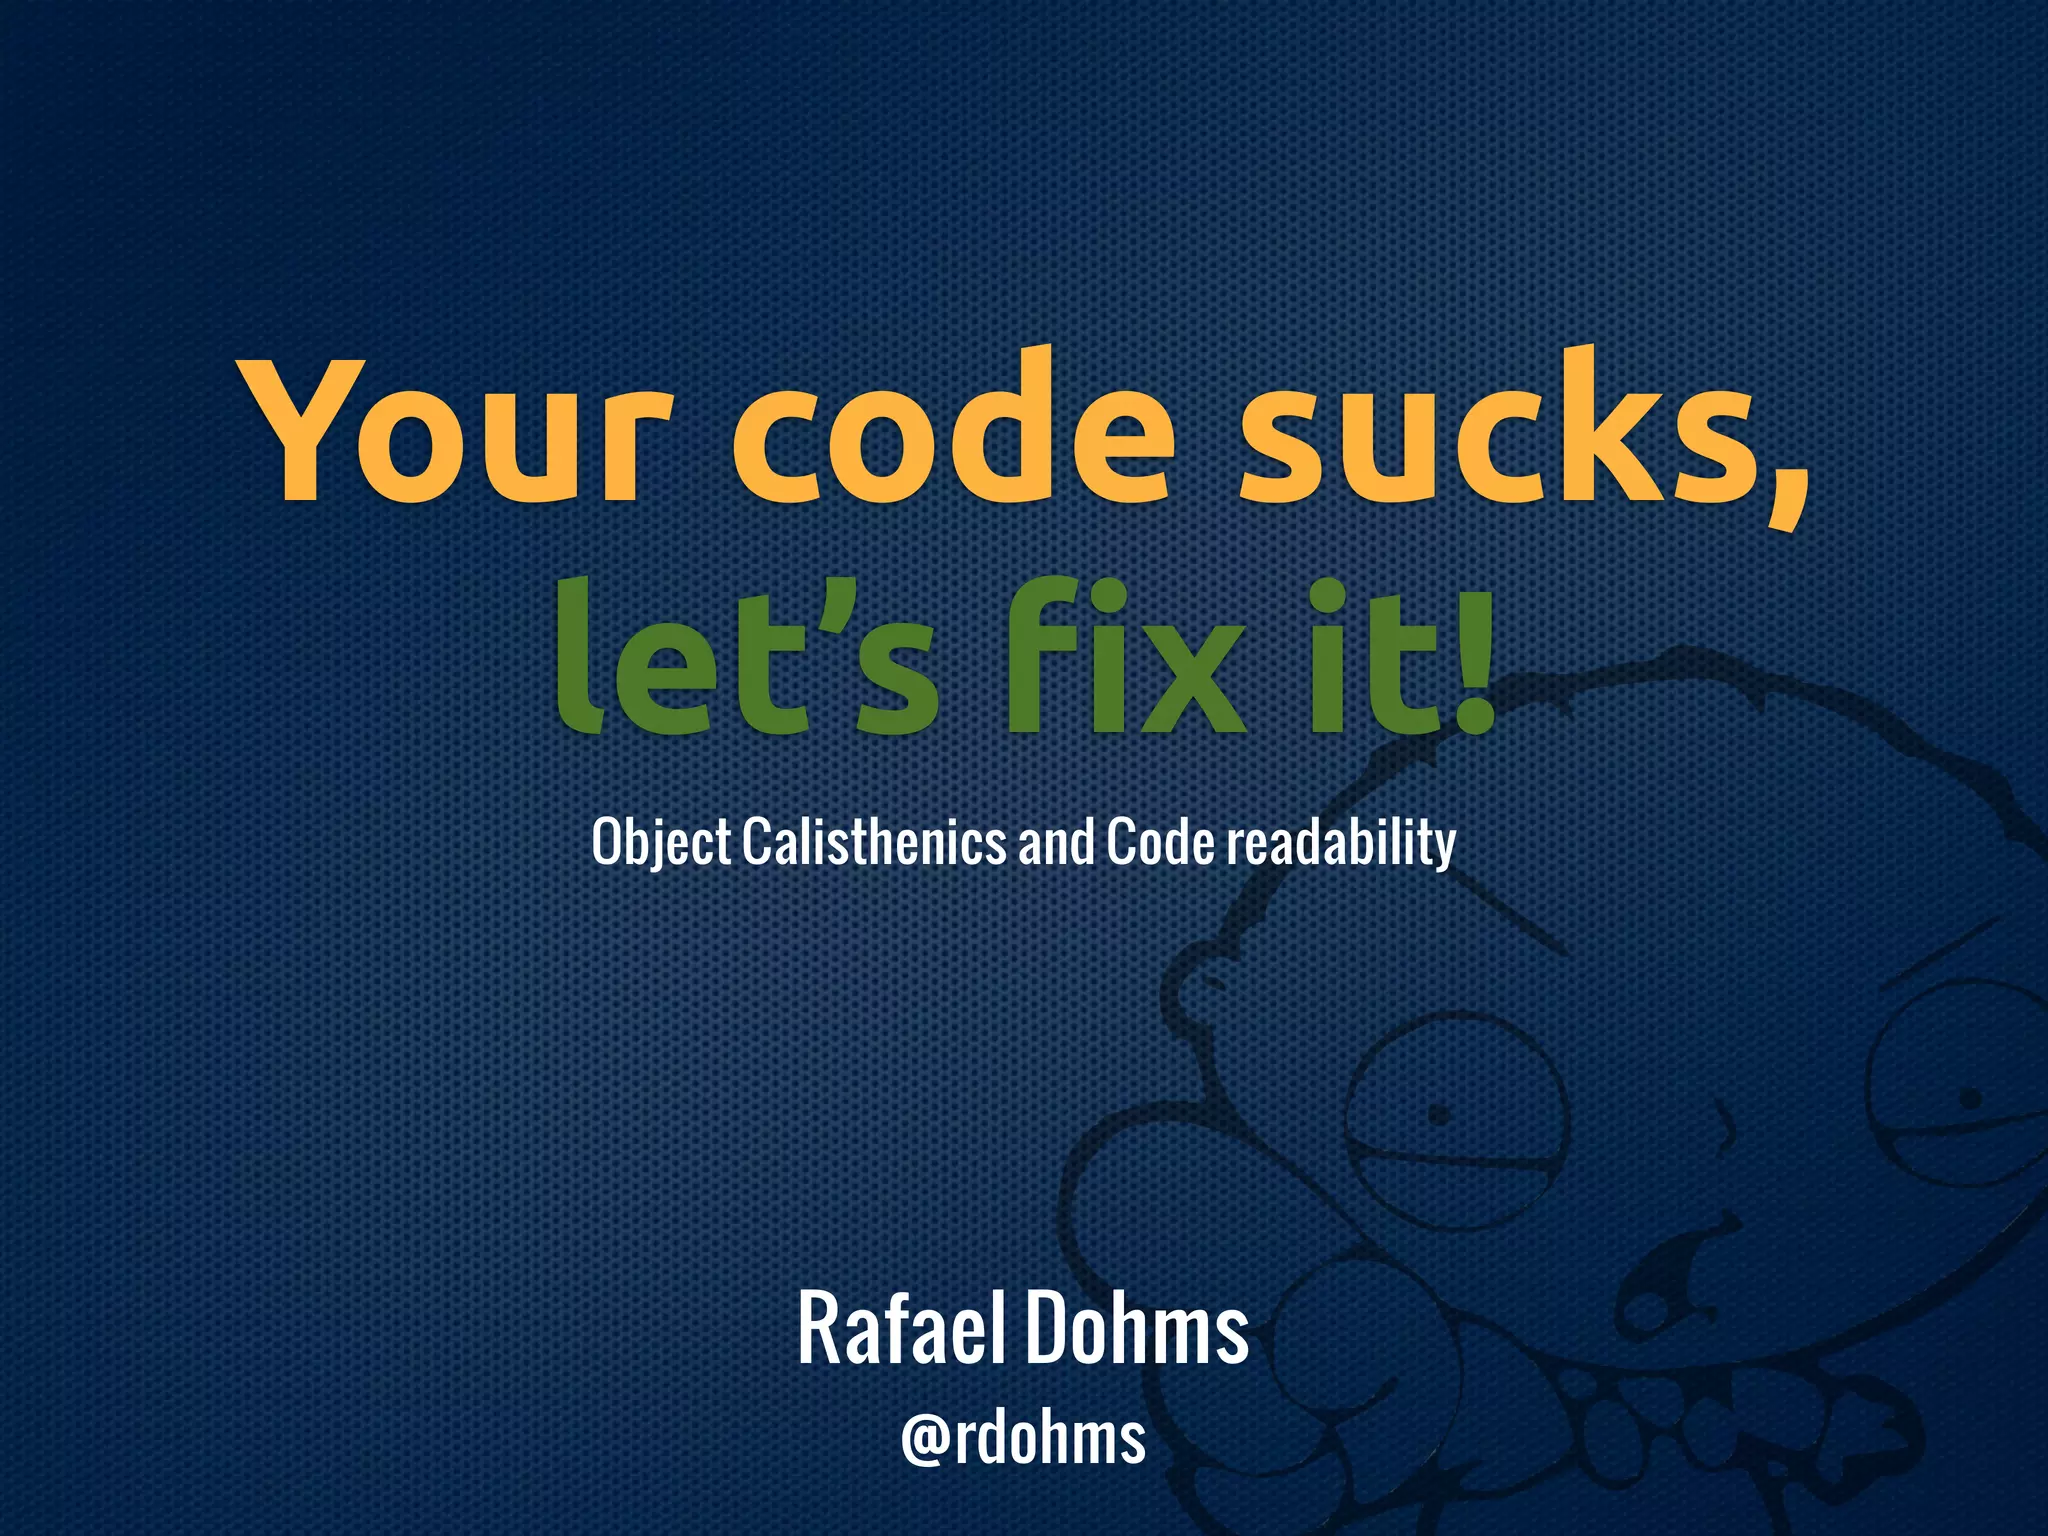 Your code sucks, let's fix it